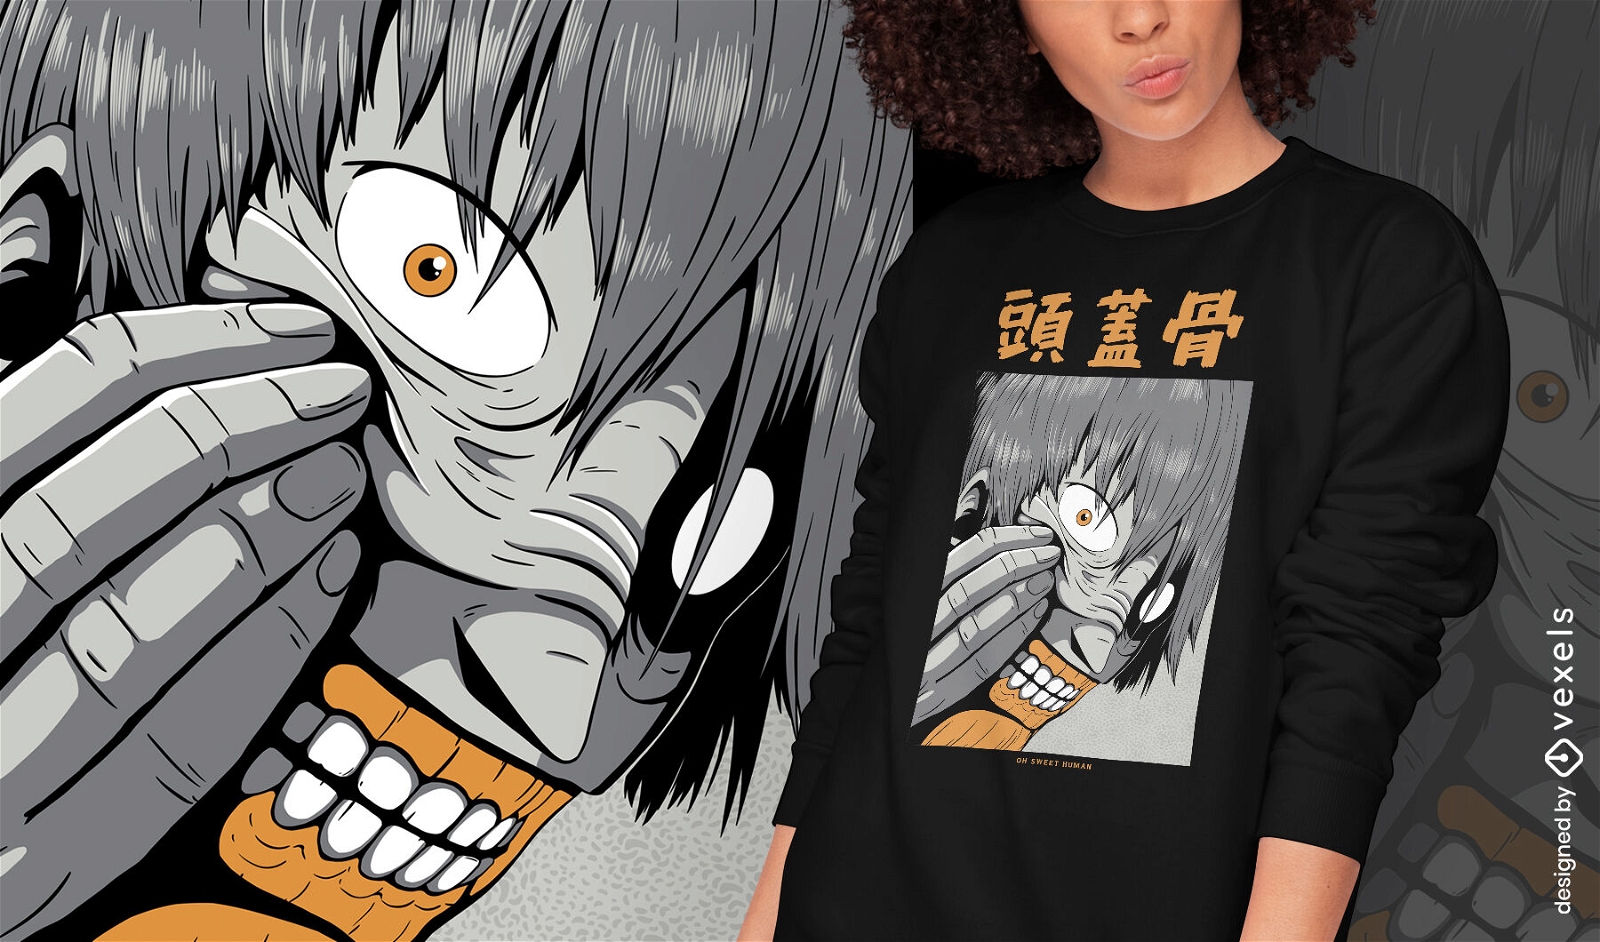 Dise?o de camiseta psd de criatura monstruo de anime japon?s